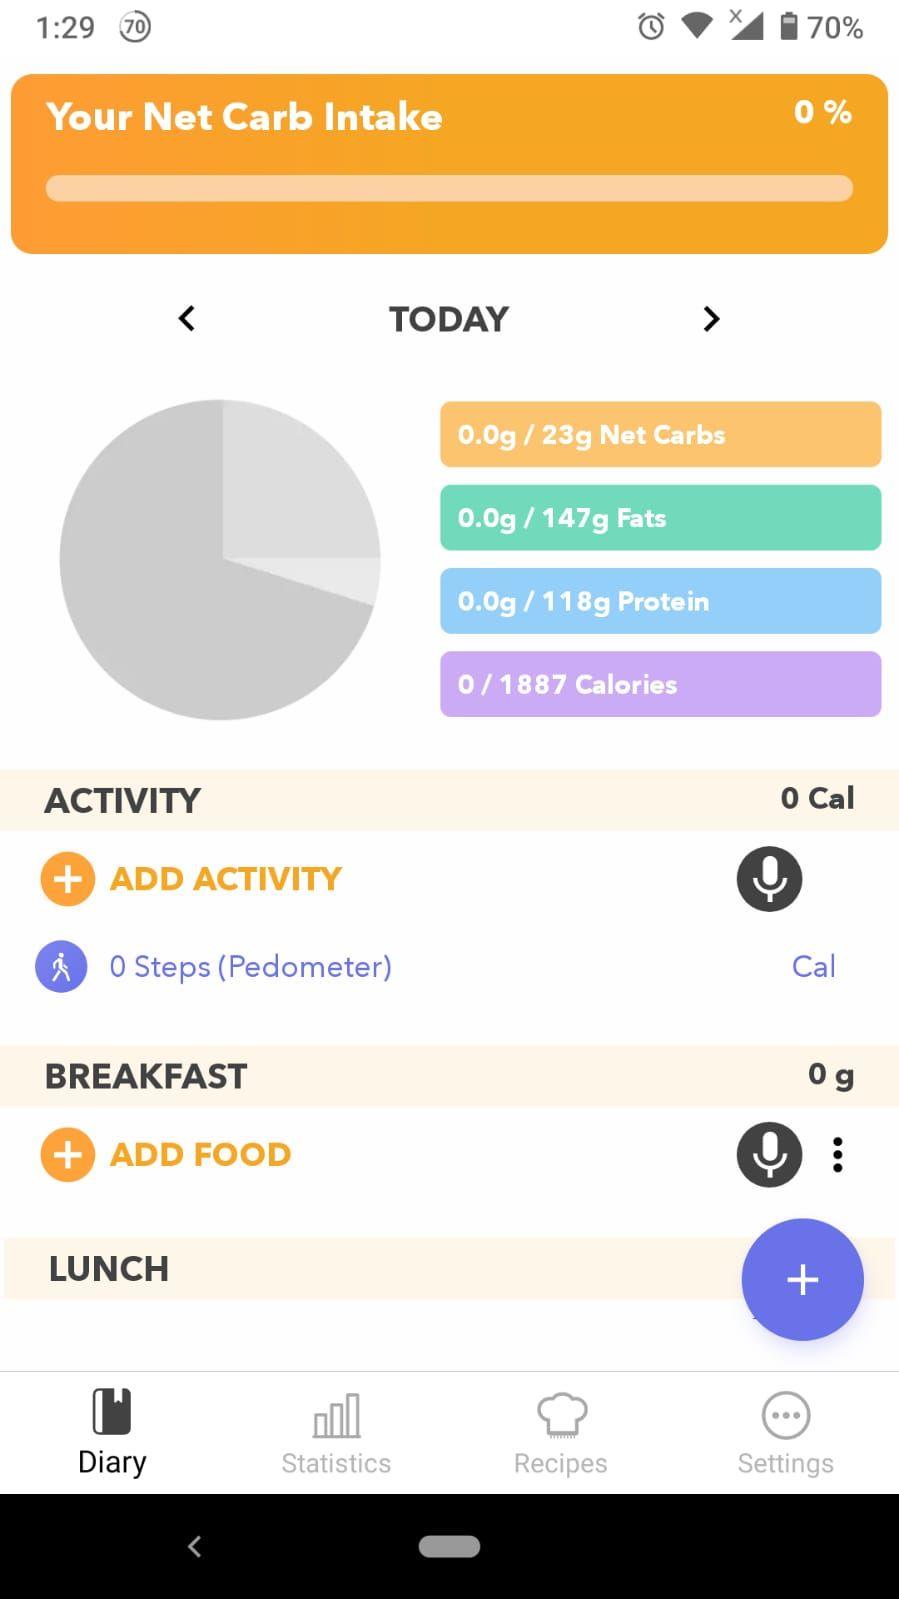 케토 다이어트를 관리하는 데 도움이 되는 5가지 최고의 앱